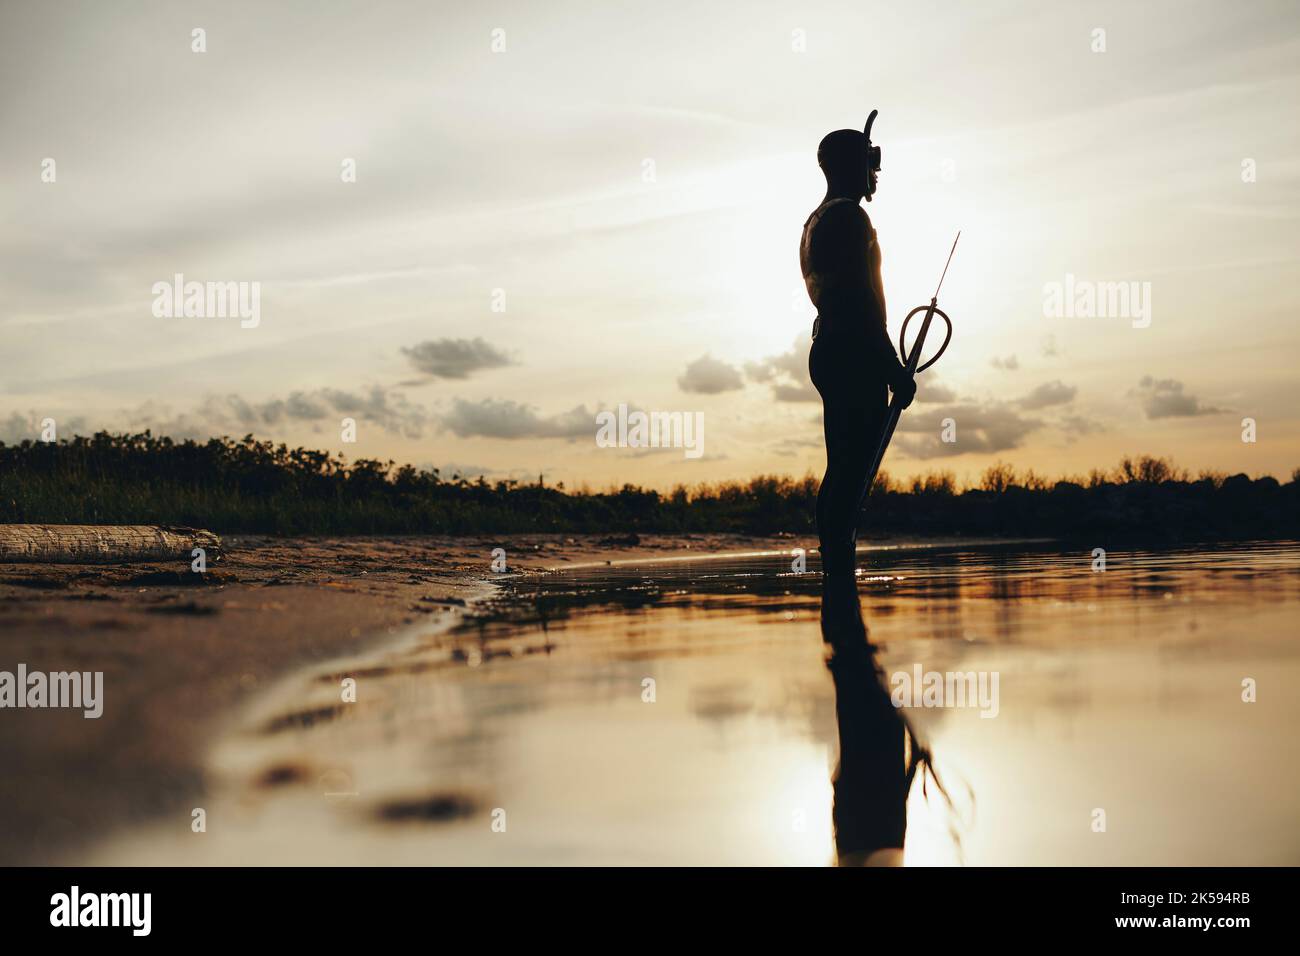 Seitenansicht des Speerfischers, der bei Sonnenuntergang Speerfischen geht. Silhouette eines abenteuerlichen Tauchers, der im Meerwasser mit einer Speerpistole in der Hand steht. Stockfoto